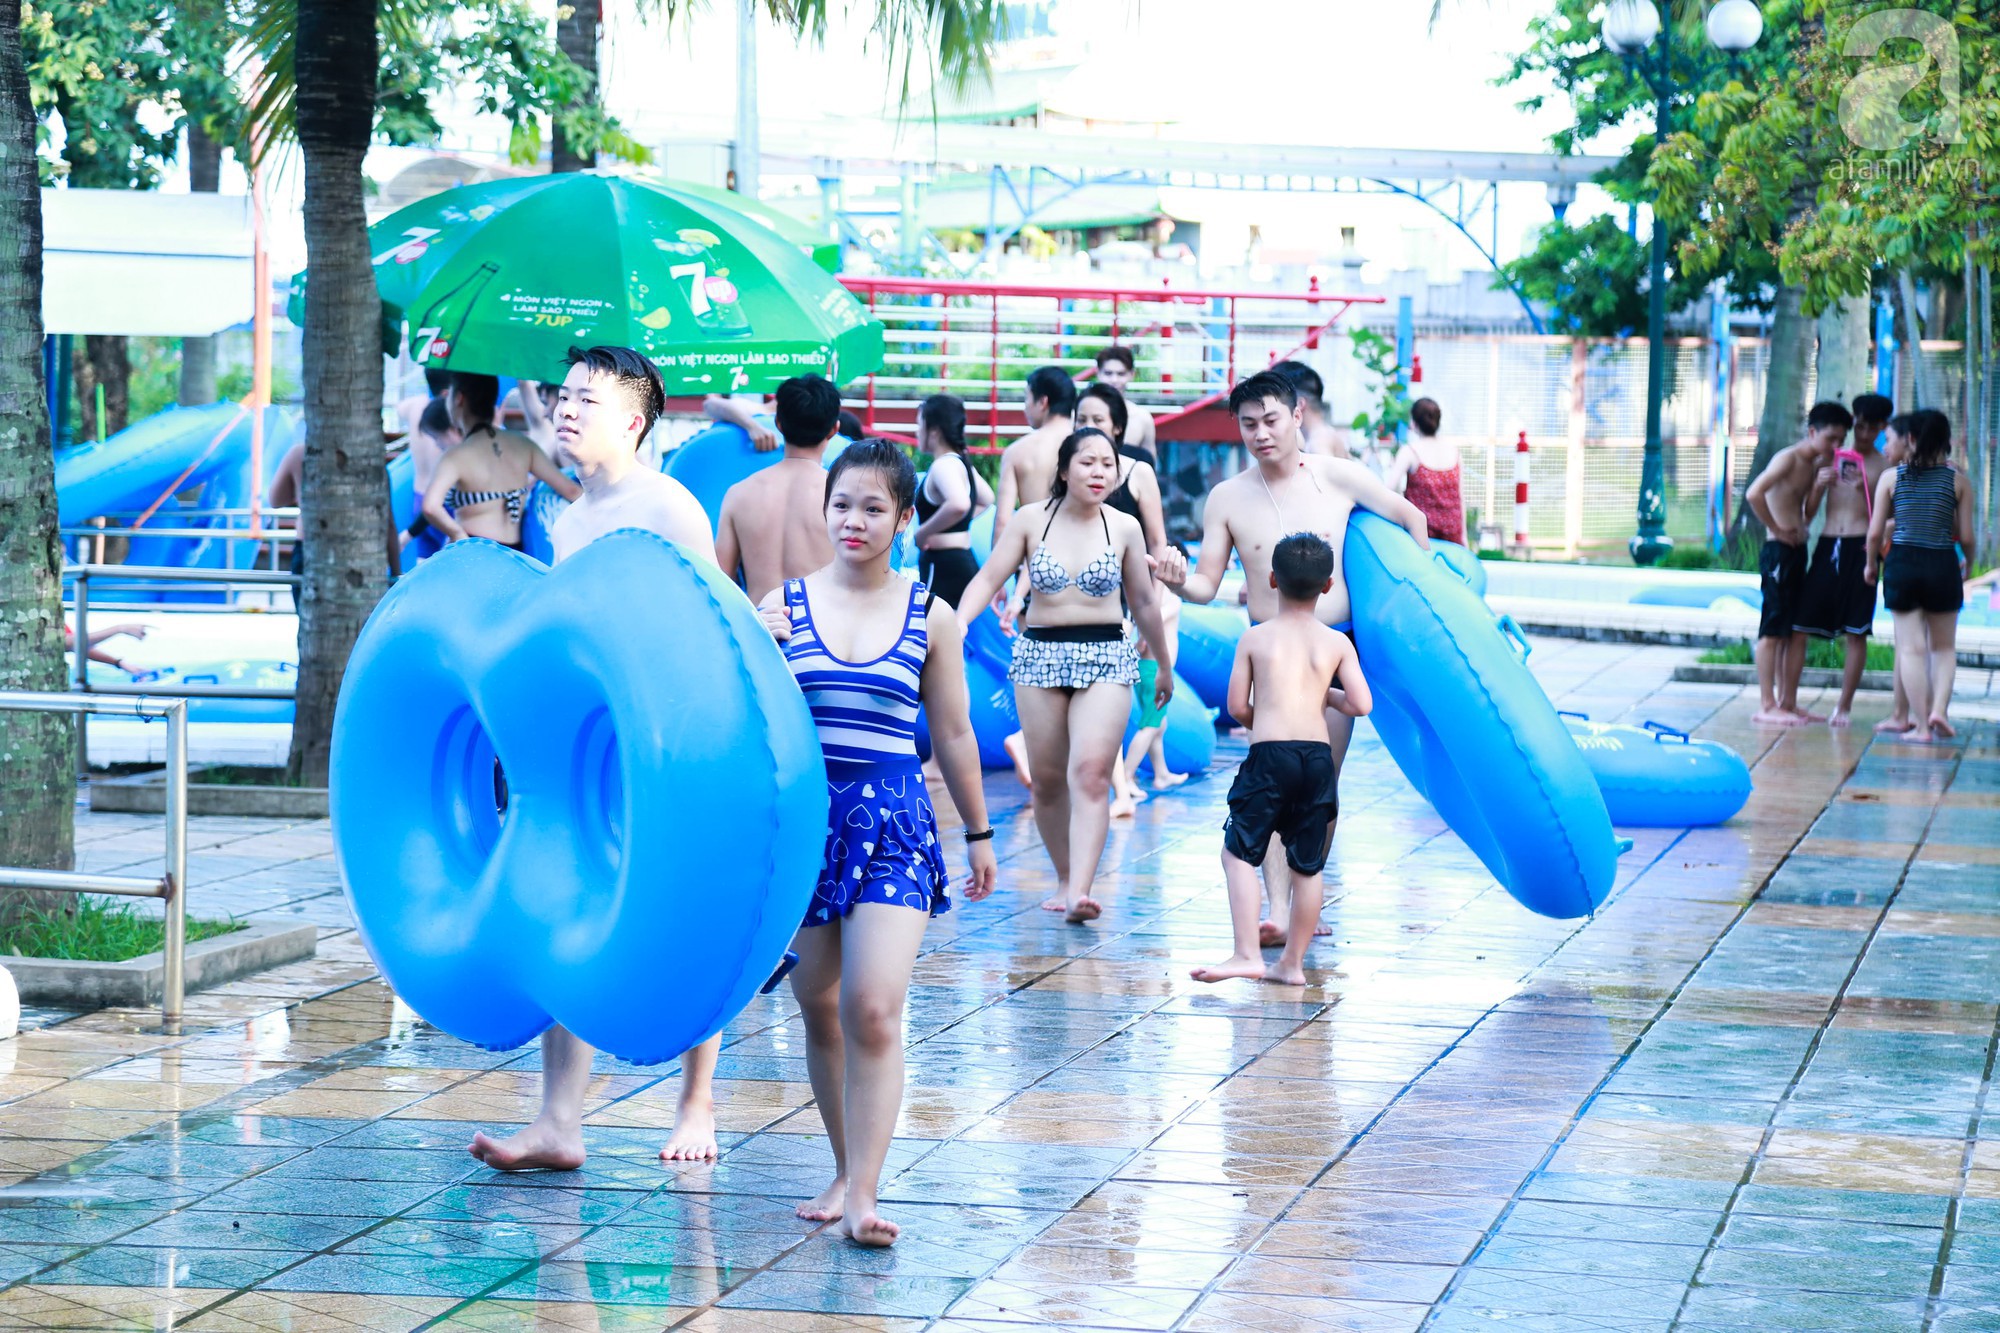 Chùm ảnh: Dân tình thoả sức vùng vẫy giải nhiệt tại “bể bơi” lớn nhất Hà Nội 4